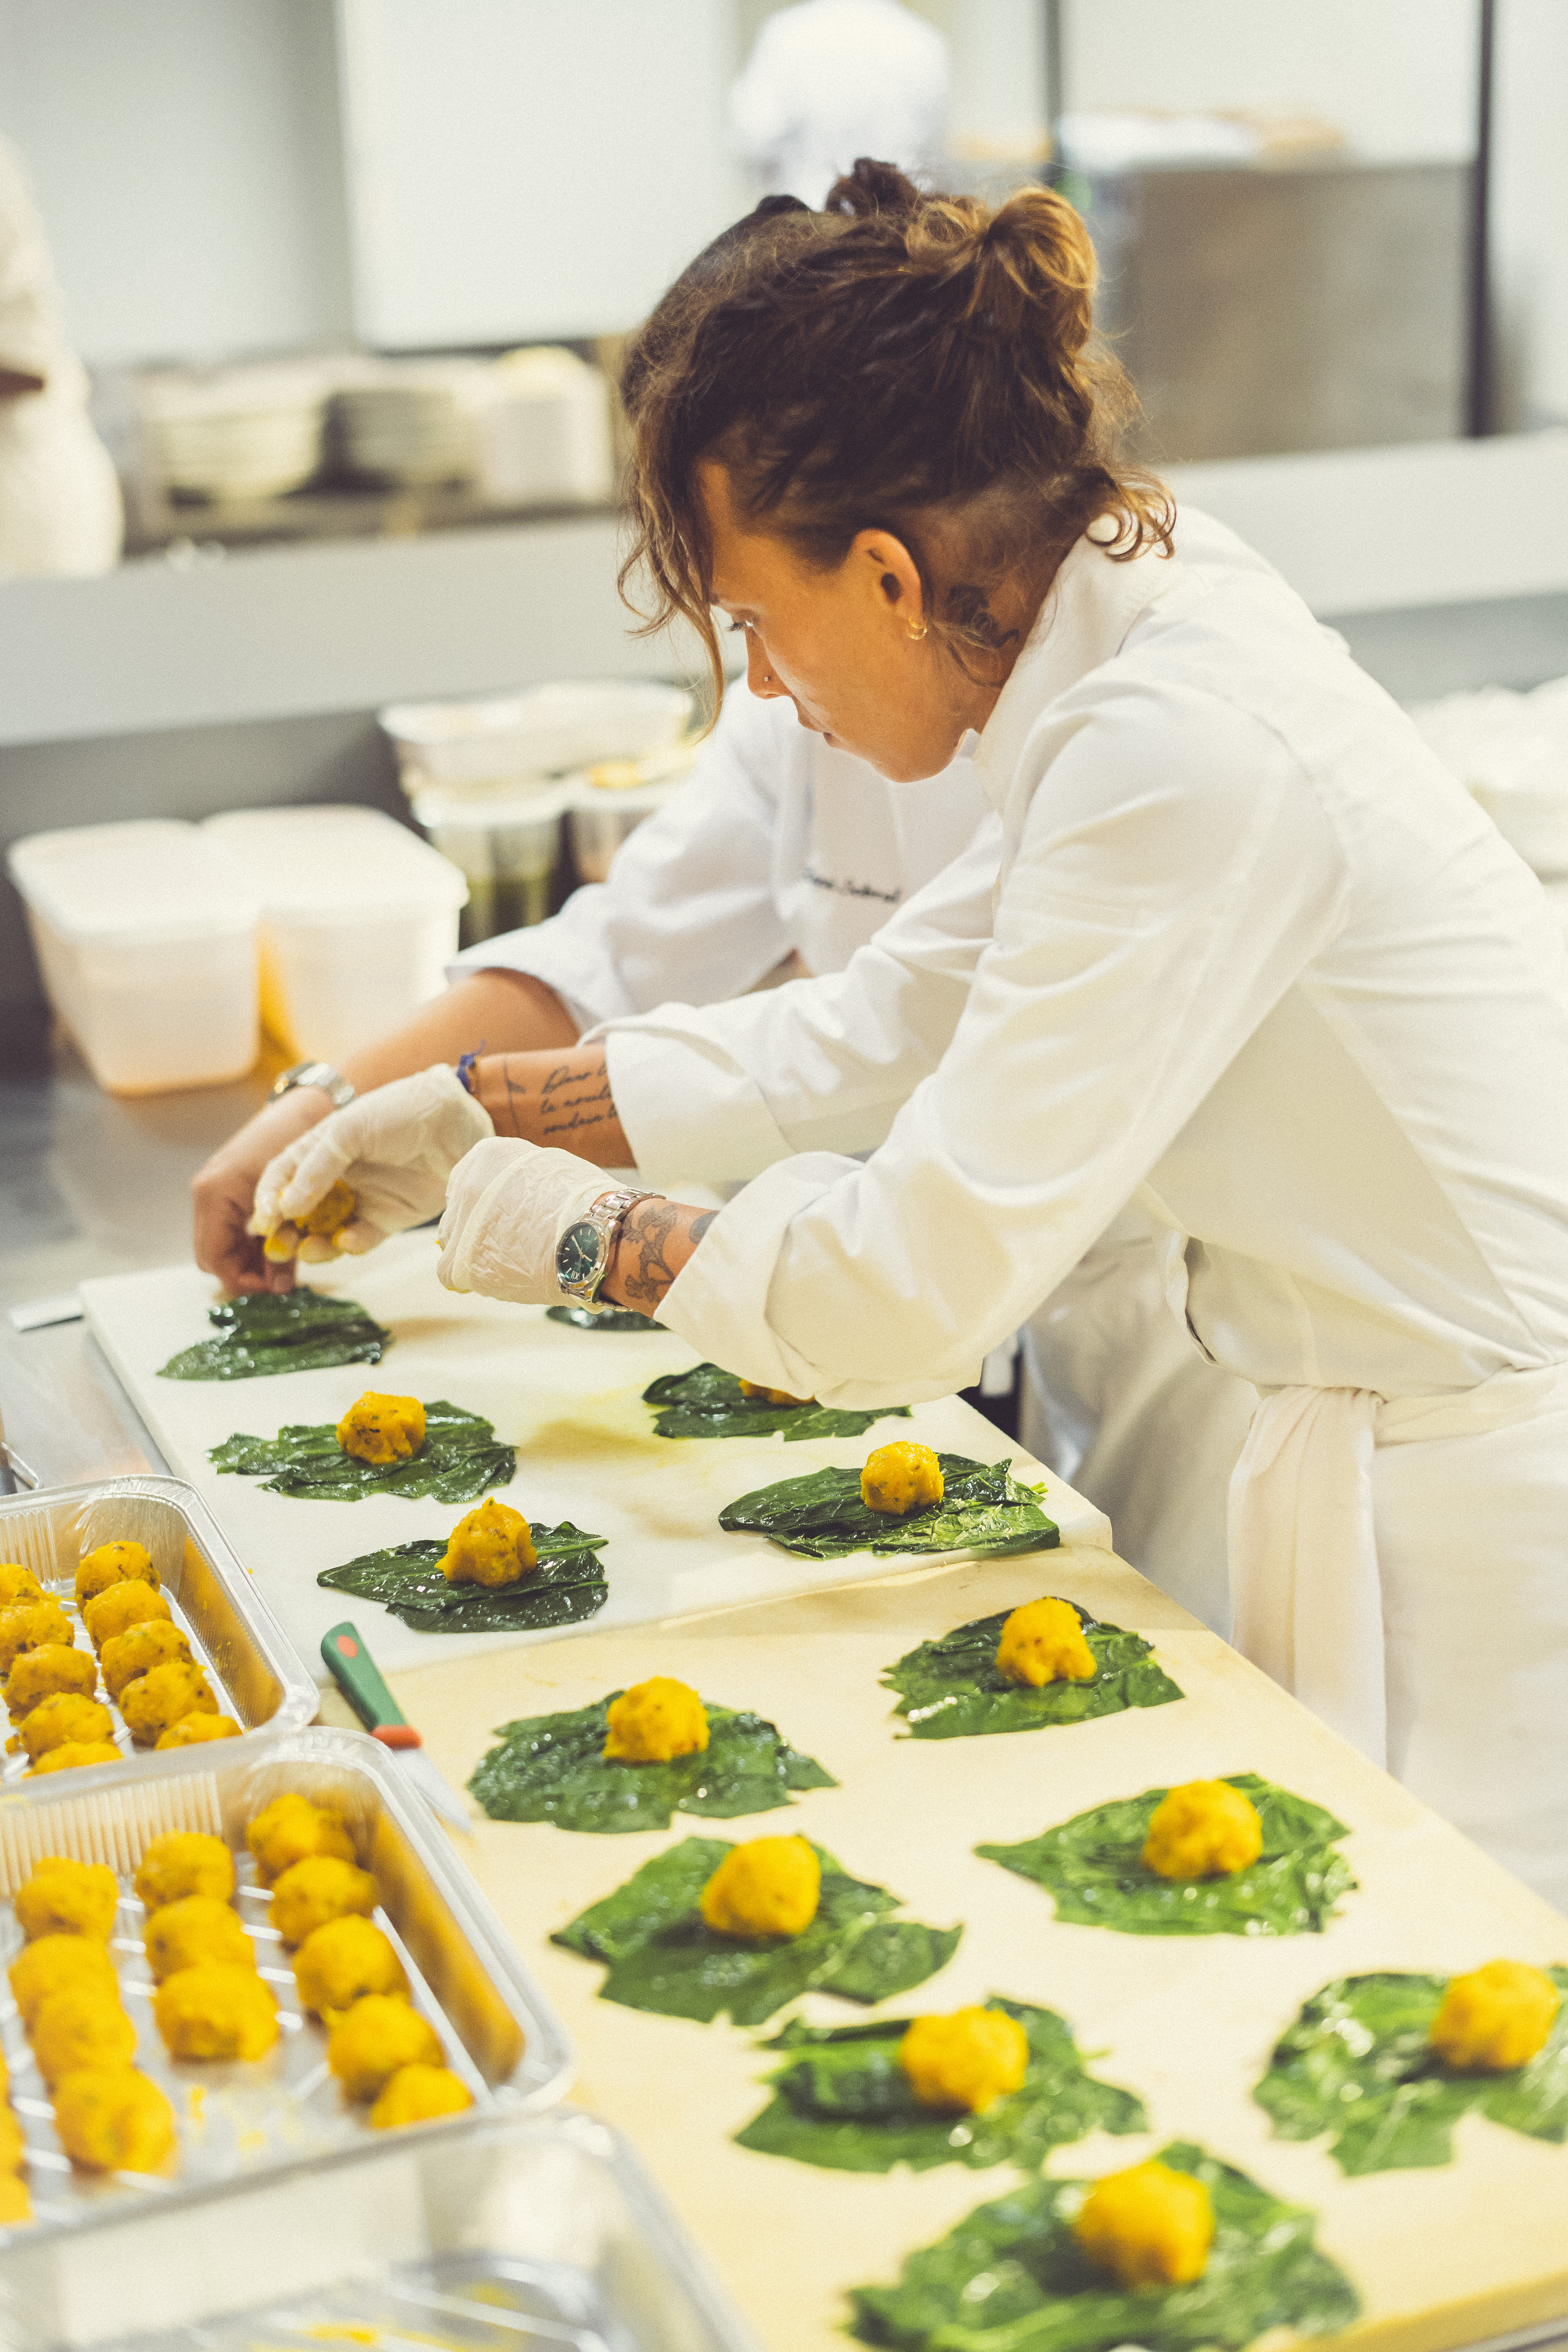 Veuve Clicquot La Grande Dame 2015, Garden Gastronomy - Preparing the food